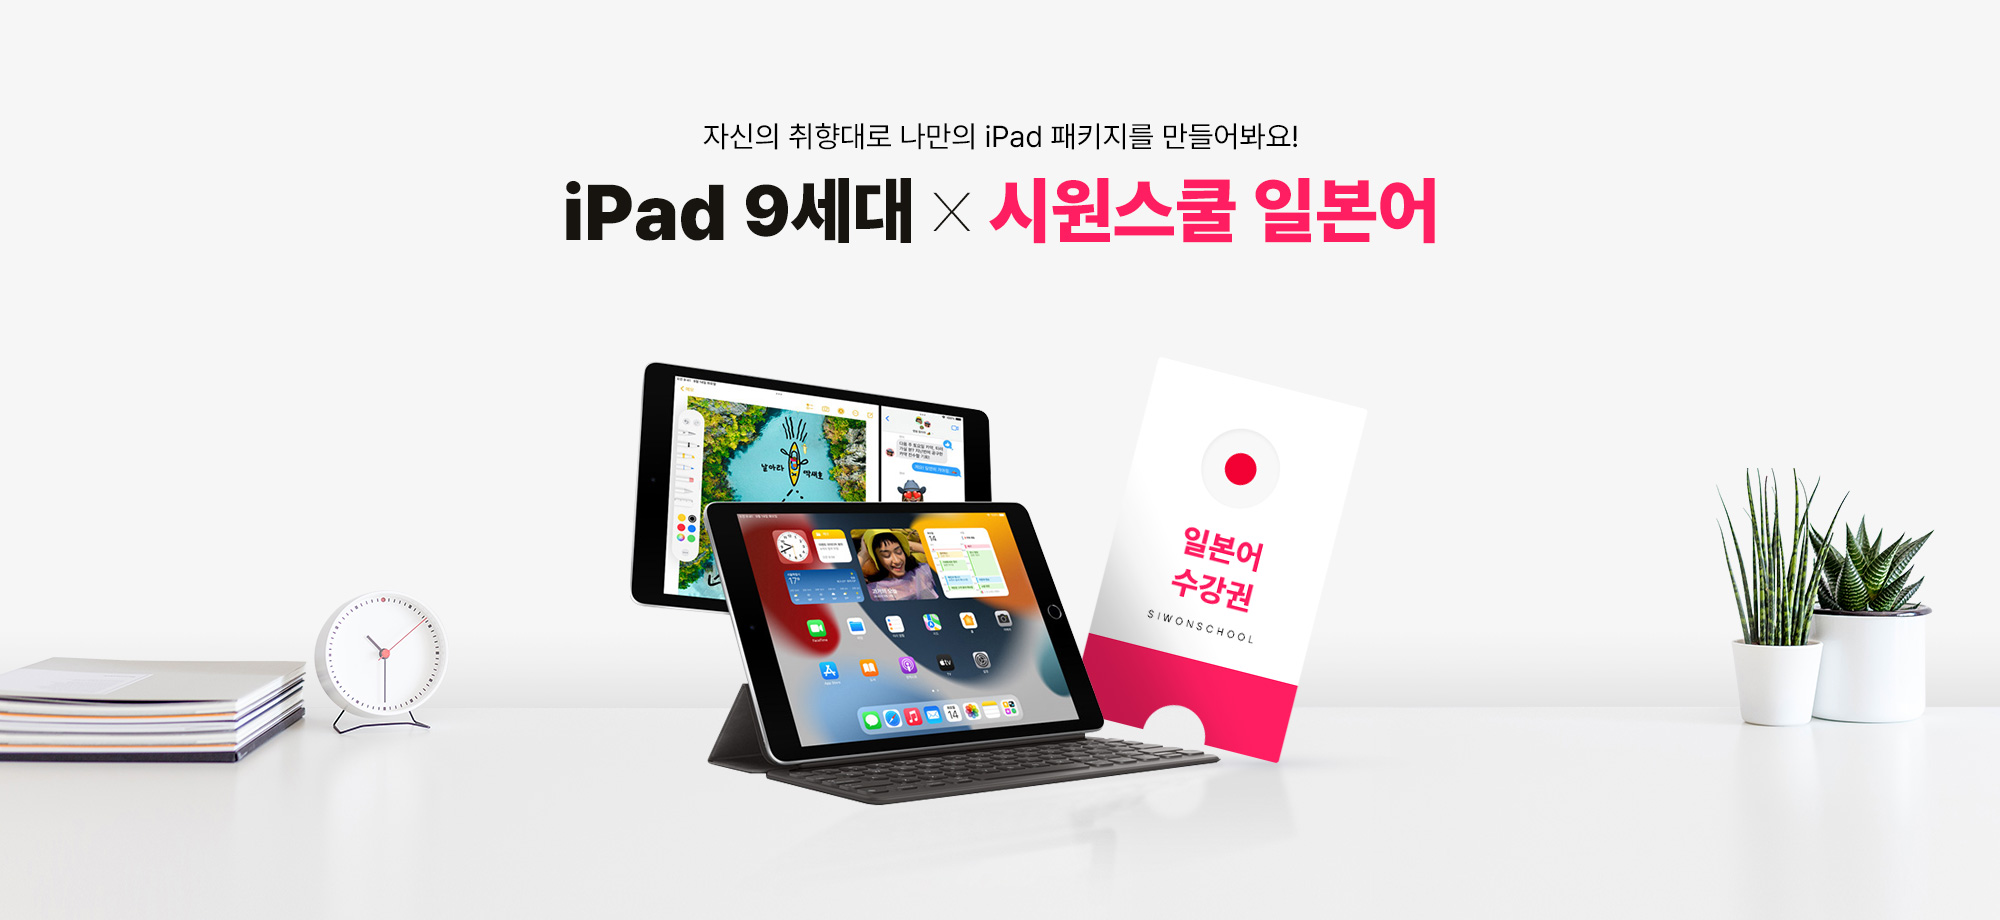 자신의 취향대로 나만의 iPad 패키지를 만들어봐요! iPad9세대 X 시원스쿨 일본어